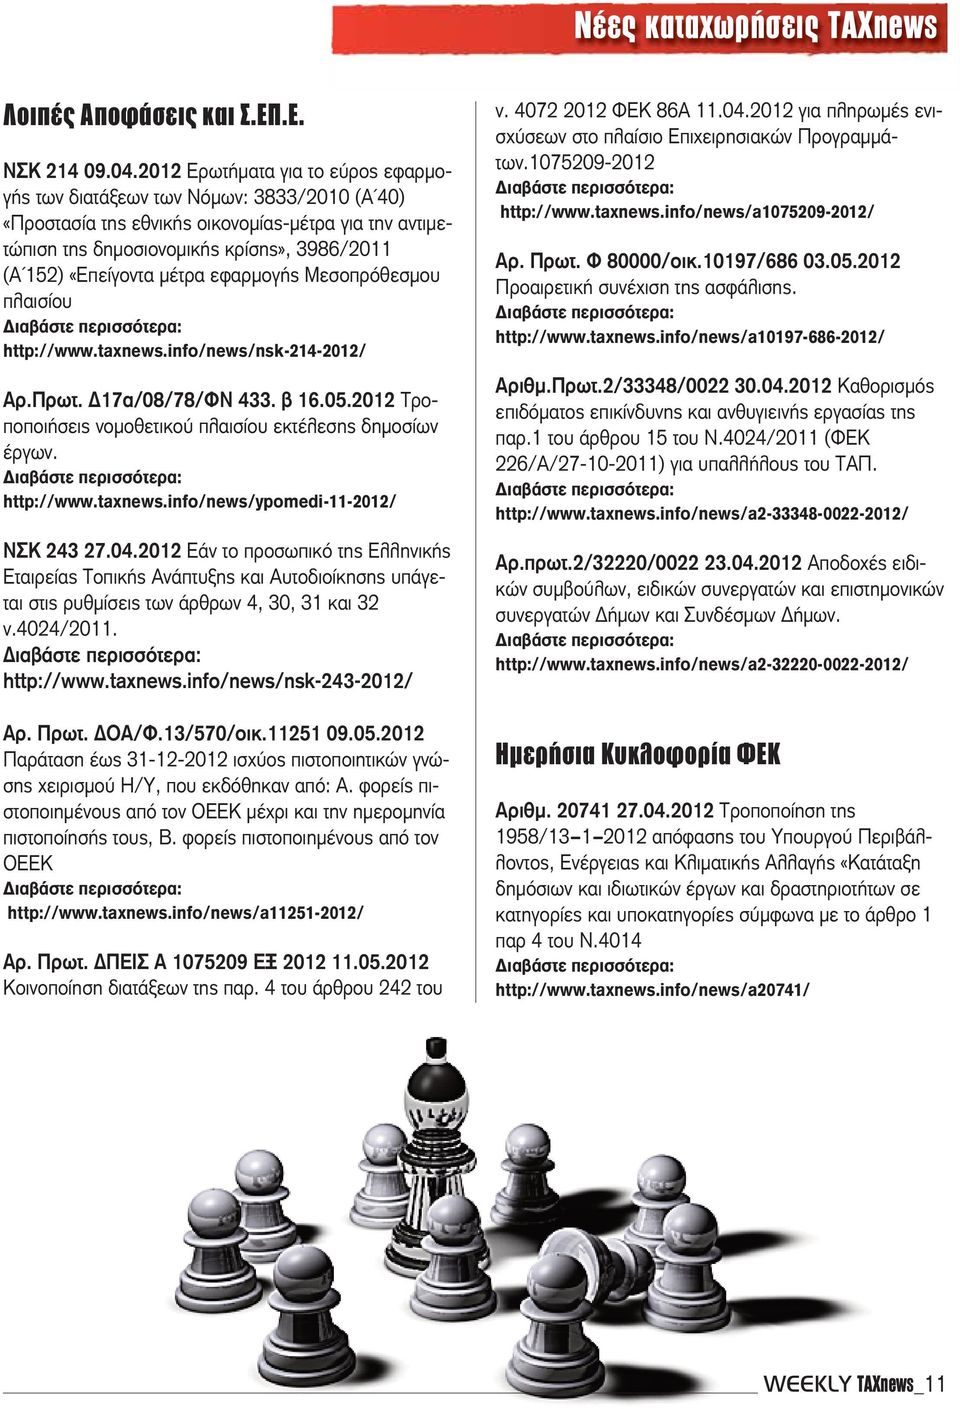 μέτρα εφαρμογής Μεσοπρόθεσμου πλαισίου http://www.taxnews.info/news/nsk-214-2012/ Αρ.Πρωτ. Δ17α/08/78/ΦΝ 433. β 16.05.2012 Τροποποιήσεις νομοθετικού πλαισίου εκτέλεσης δημοσίων έργων. http://www.taxnews.info/news/ypomedi-11-2012/ ΝΣΚ 243 27.